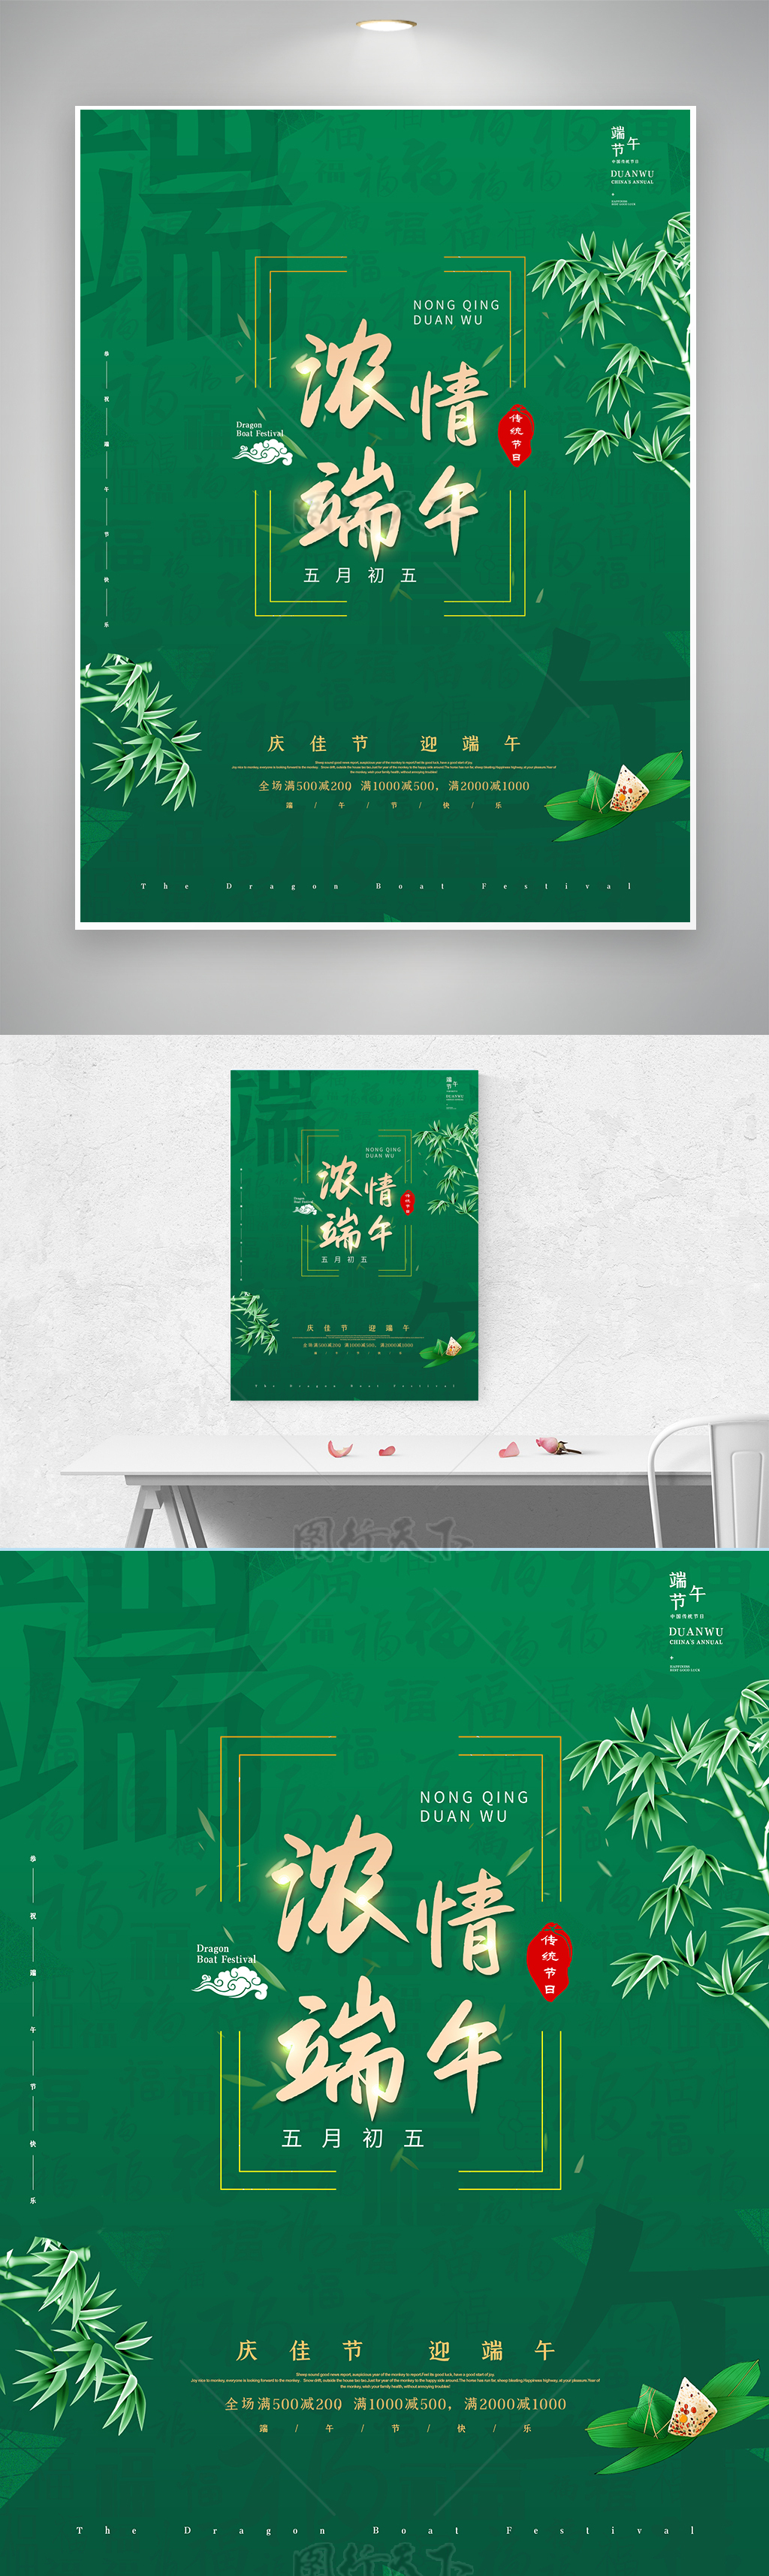 中国风浓情端午节传统节日促销活动创意海报